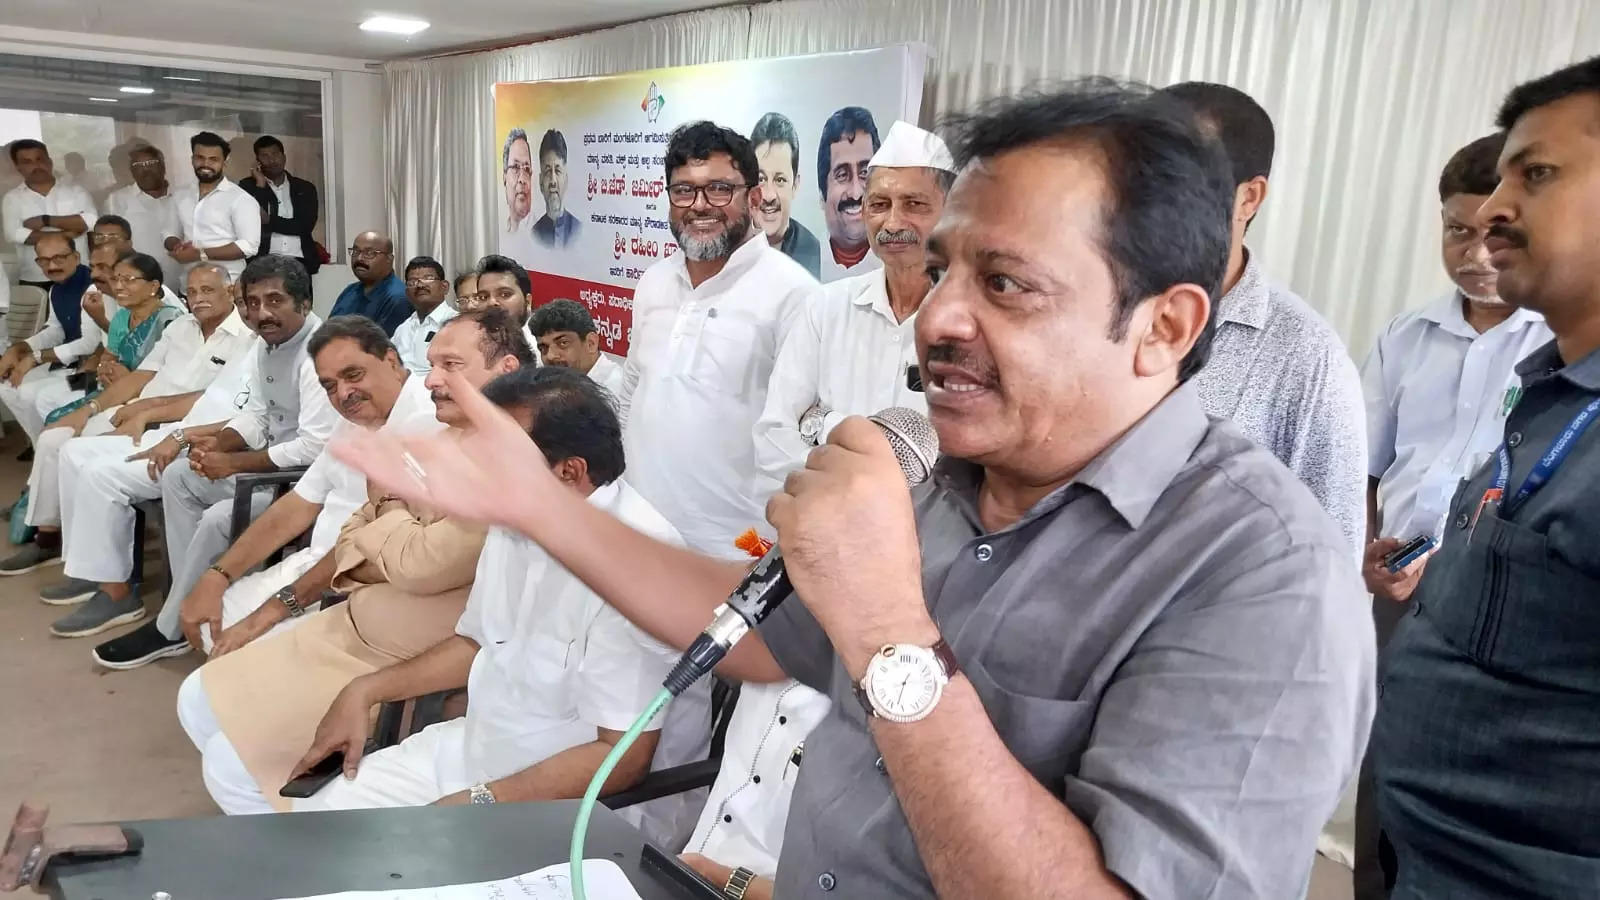 BJP will be eradicated in Karnataka soon: Zameer Ahmed Khan | Mangaluru News – Times of India